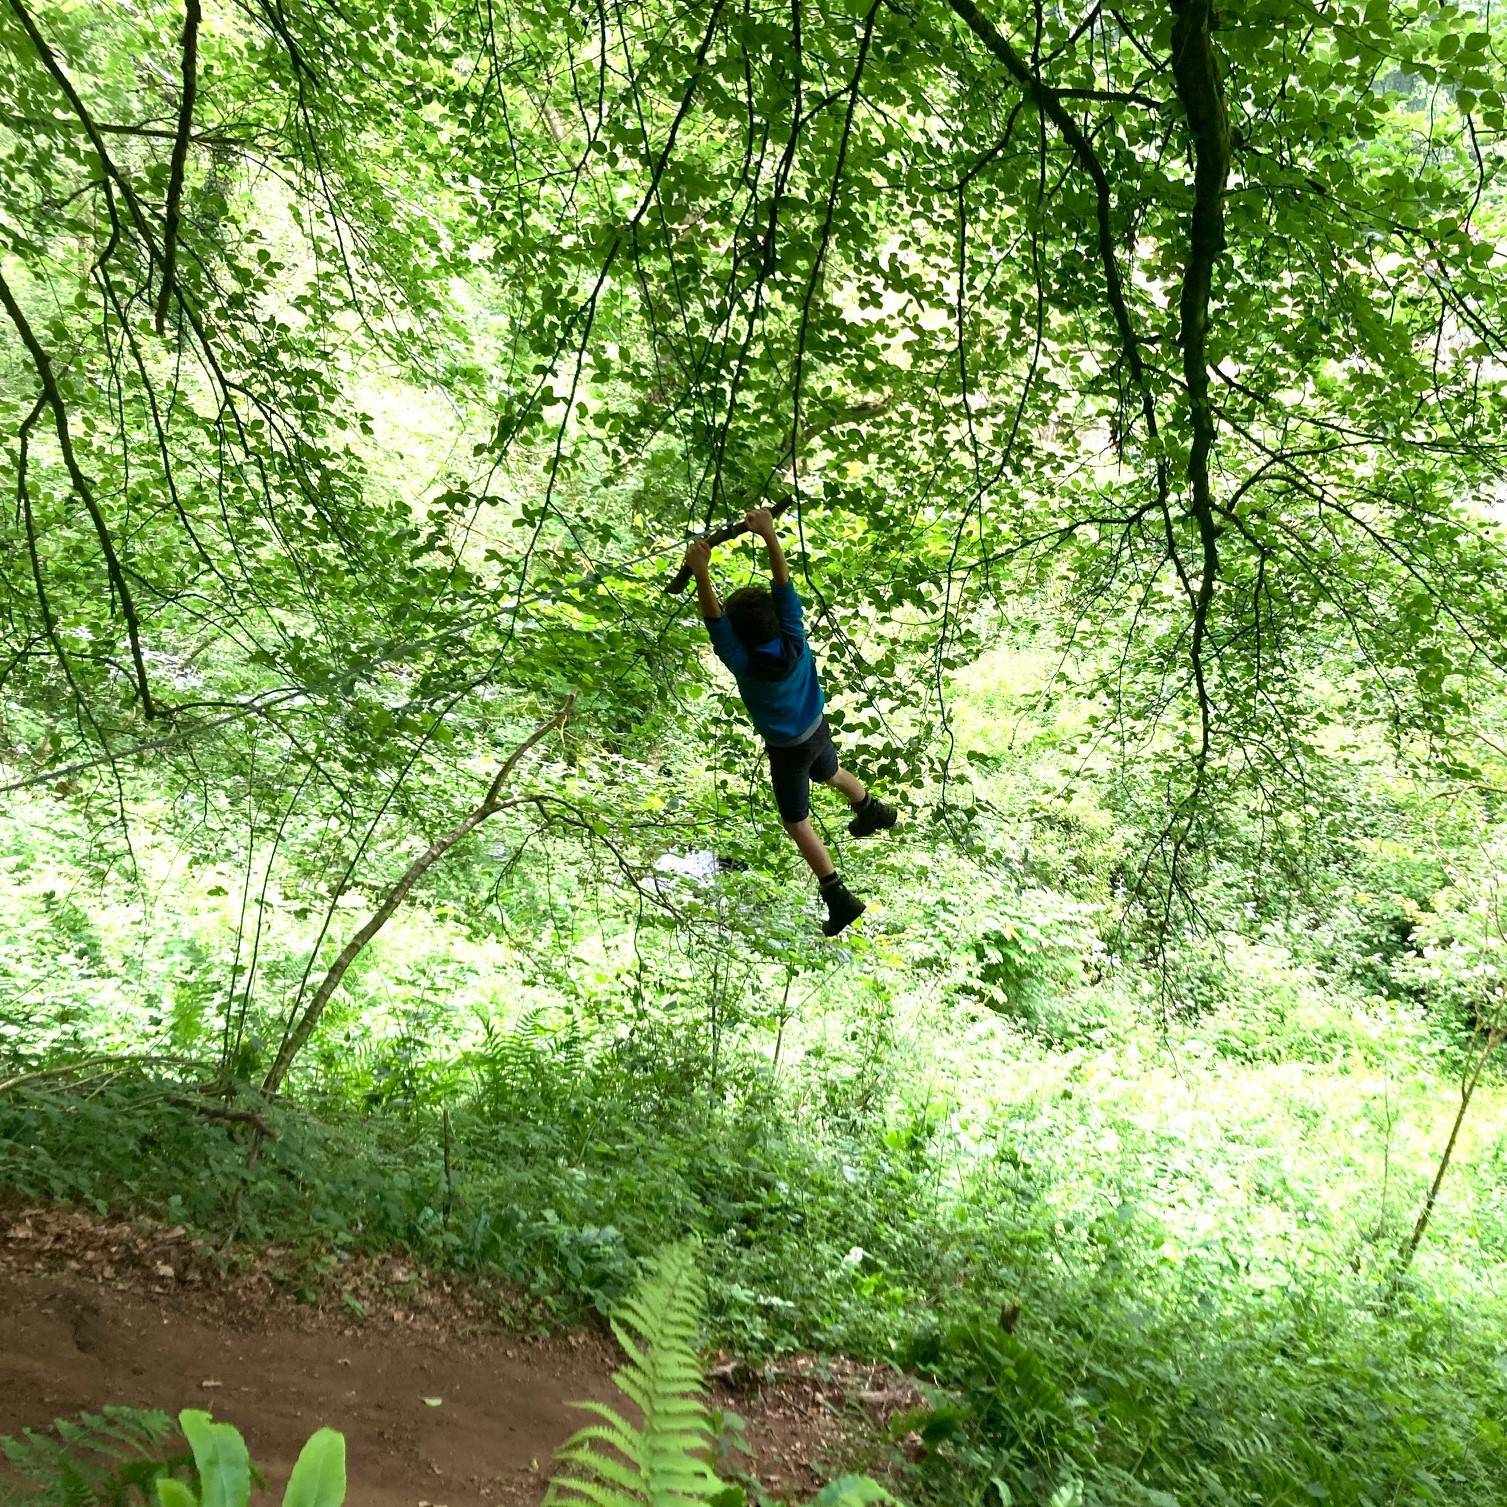 A boy flying on a tree swing